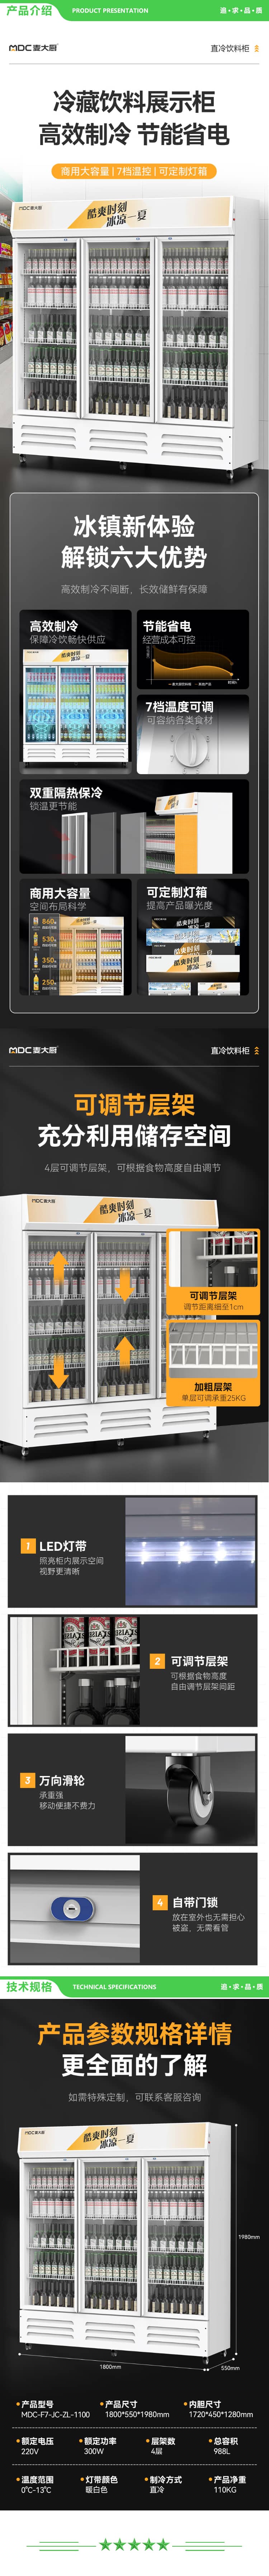 麦大厨 MDC-F7-JC-ZL-1100 饮料柜展示柜冷藏柜立式商用冰柜啤酒水饮料陈列柜便利店超市展示柜保鲜柜 2.jpg